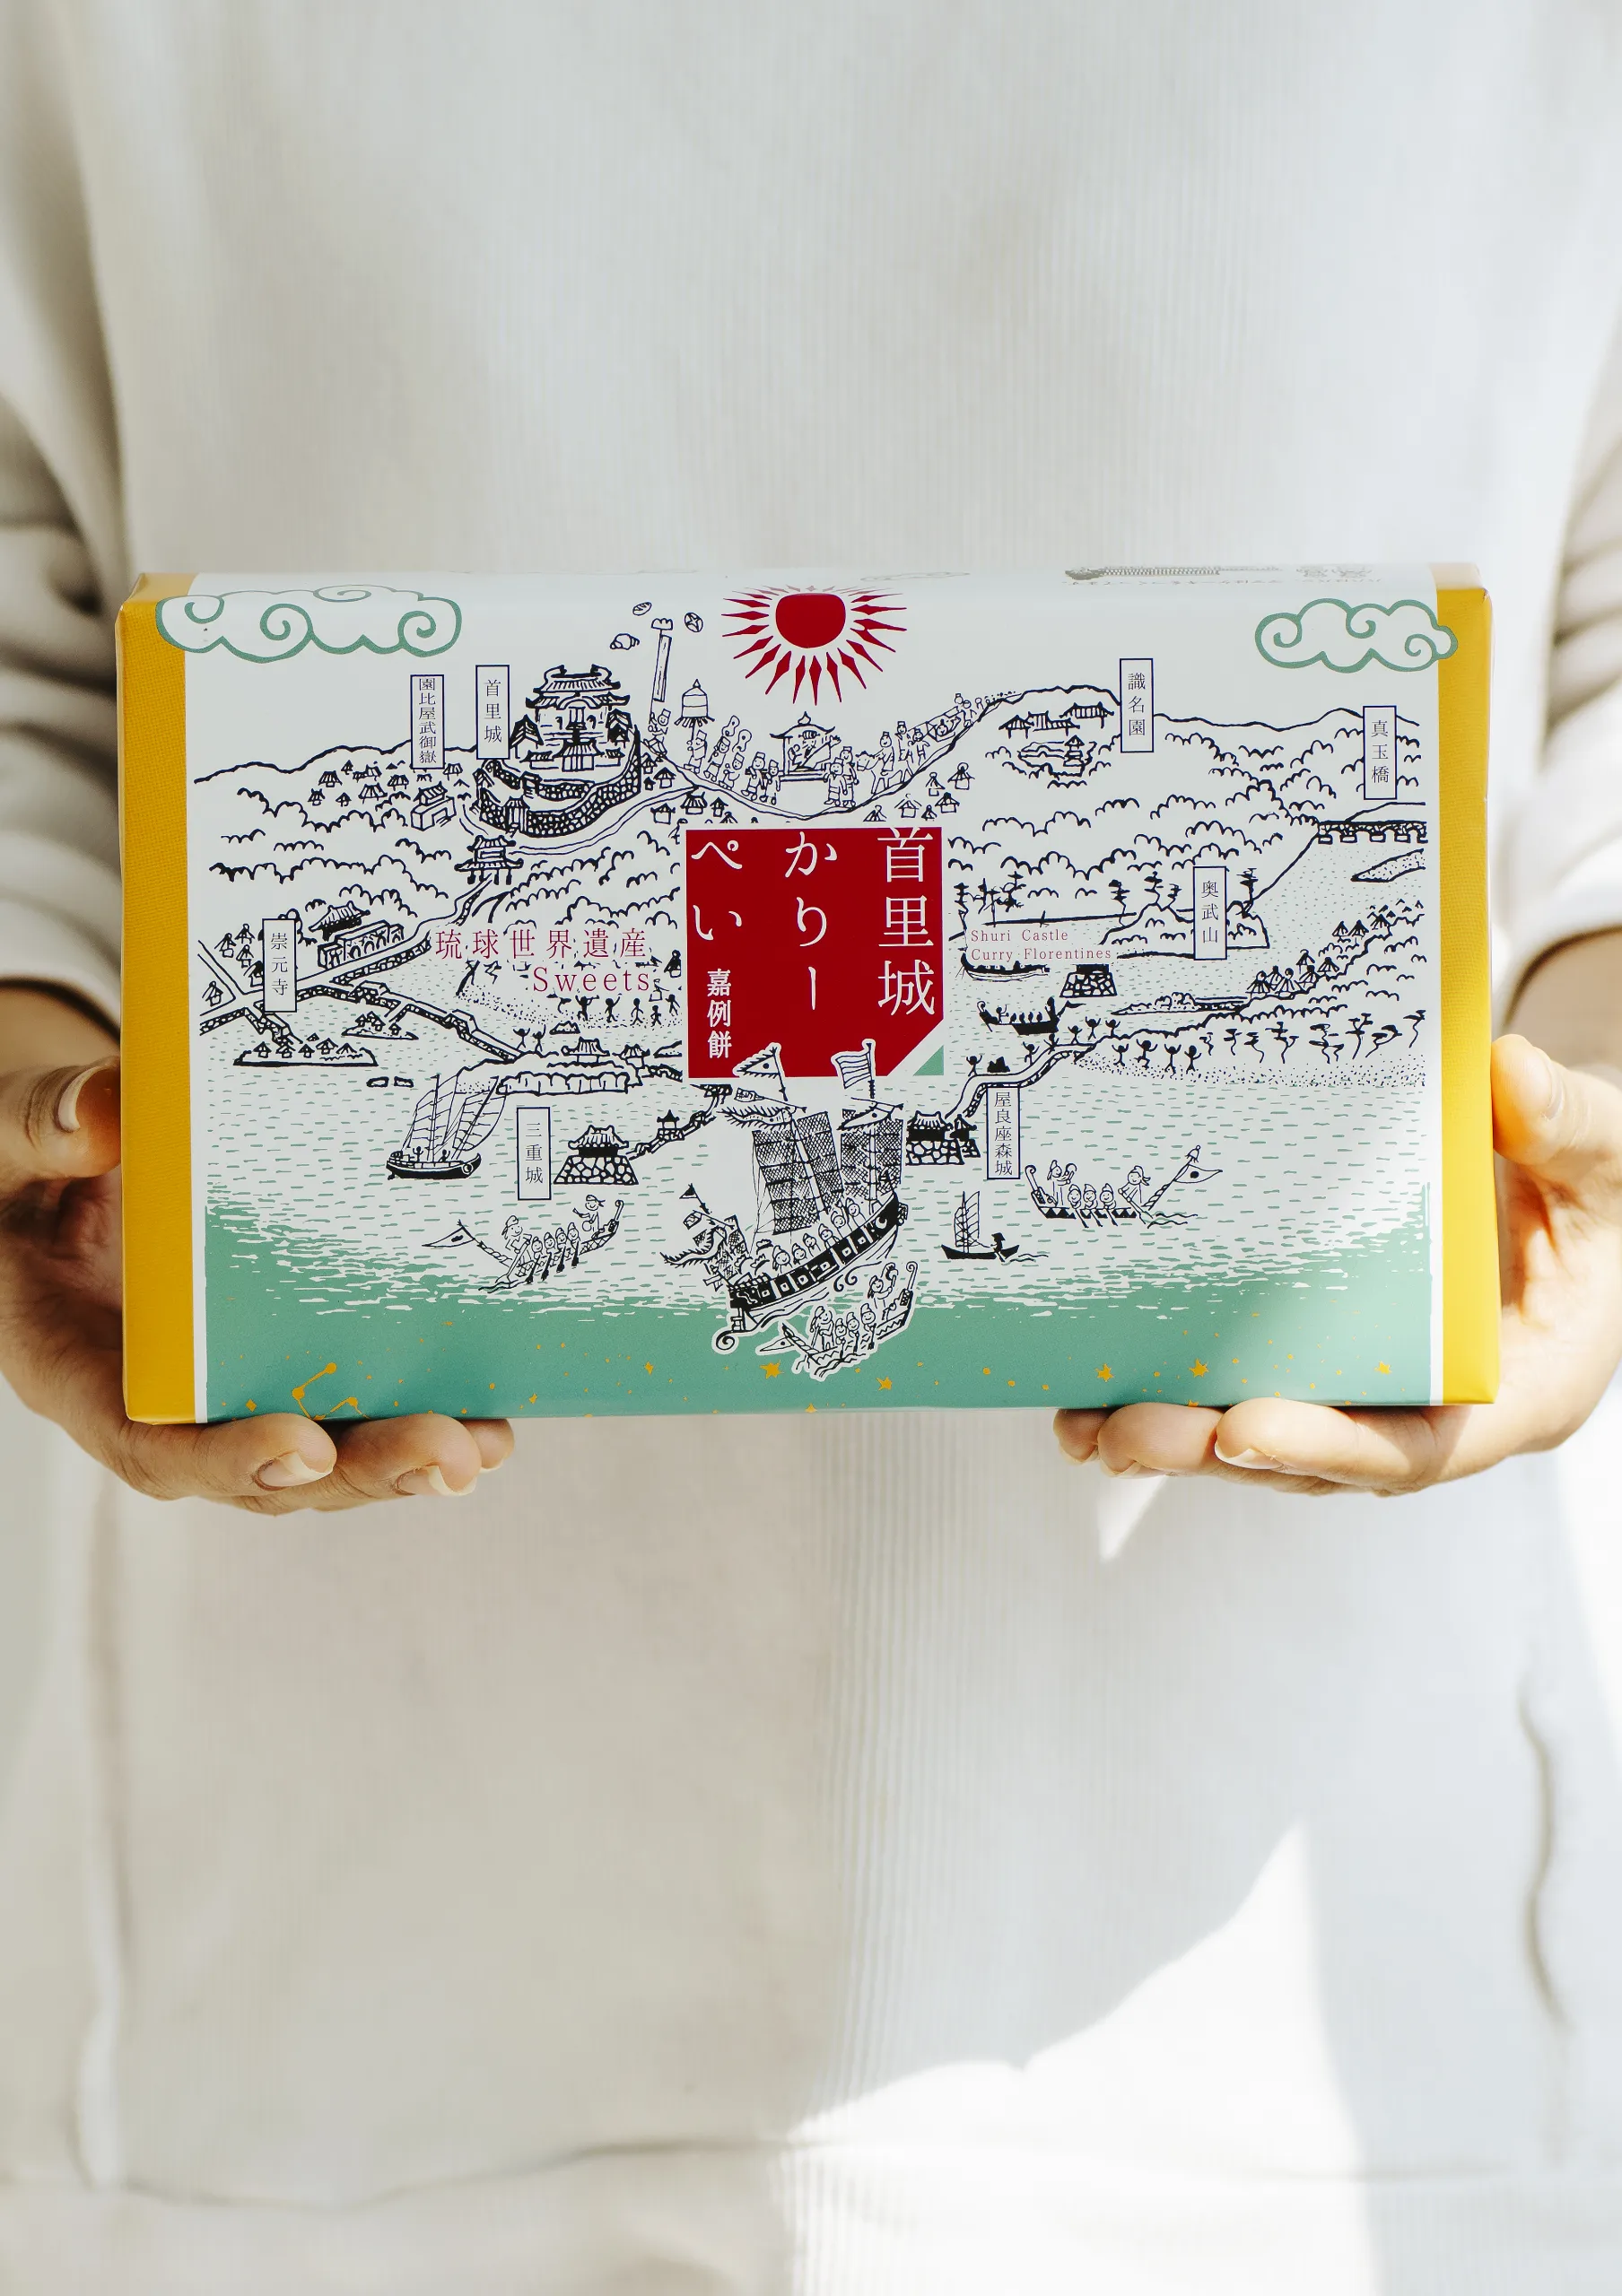 【焼き菓子のご紹介】琉球王国への想い✕いまいパンの技術で誕生した「琉球世界遺産スイーツ」